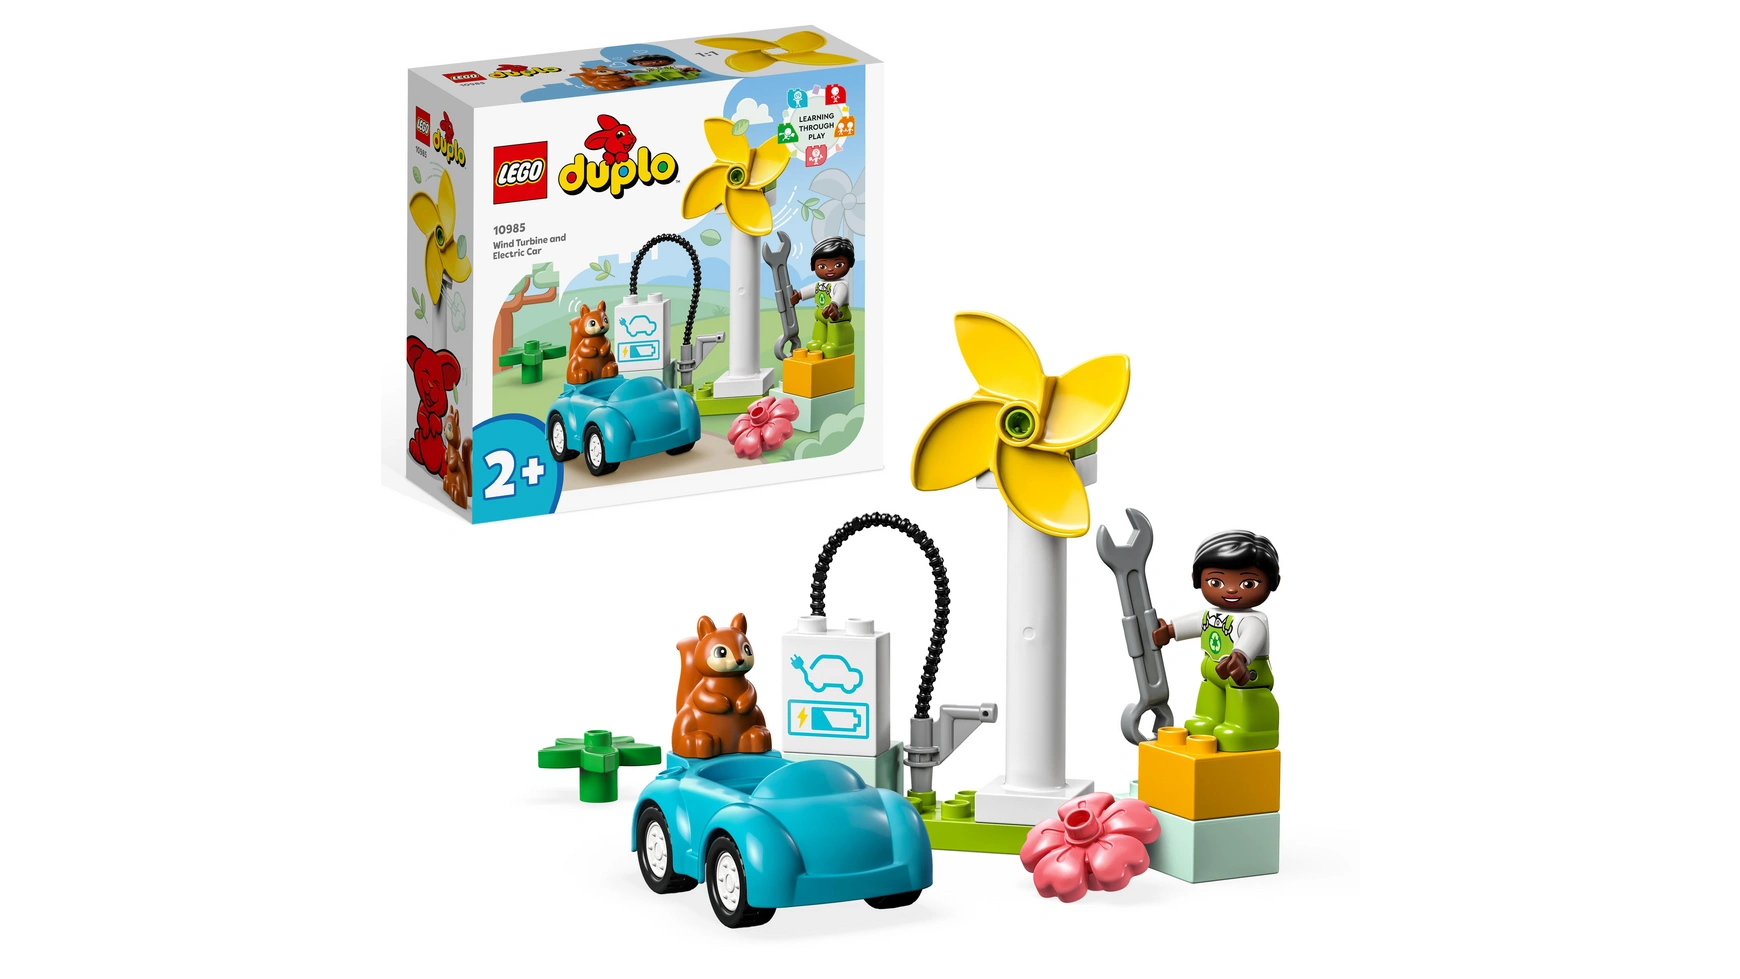 Lego DUPLO Town ветряная турбина и электромобиль, развивающая игрушка для детей от 2 лет и старше lego duplo town ветряная турбина и электромобиль развивающая игрушка для детей от 2 лет и старше